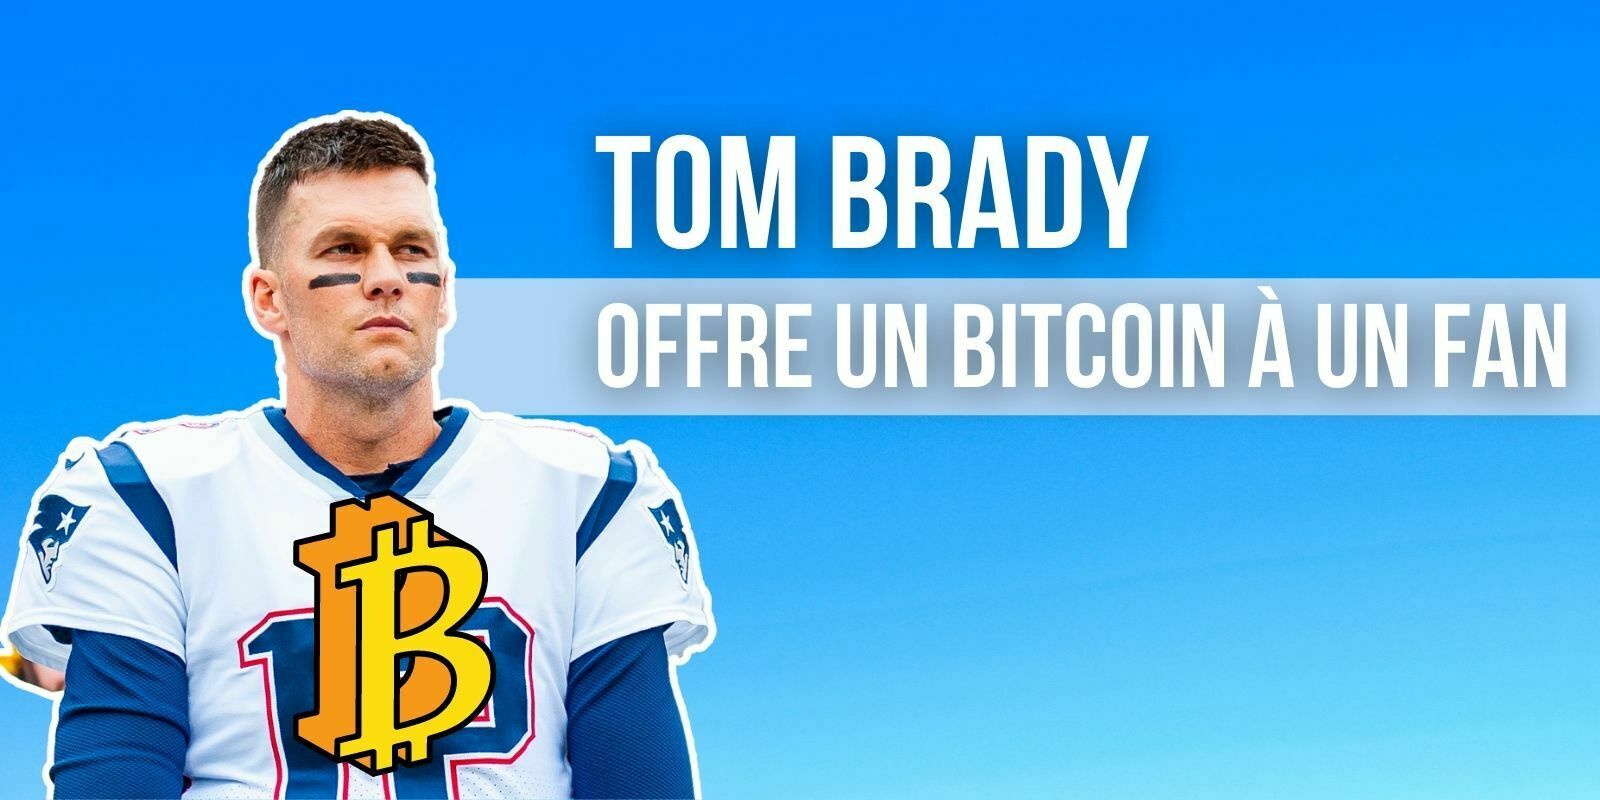 La star du football américain Tom Brady a offert un bitcoin (BTC) à un fan